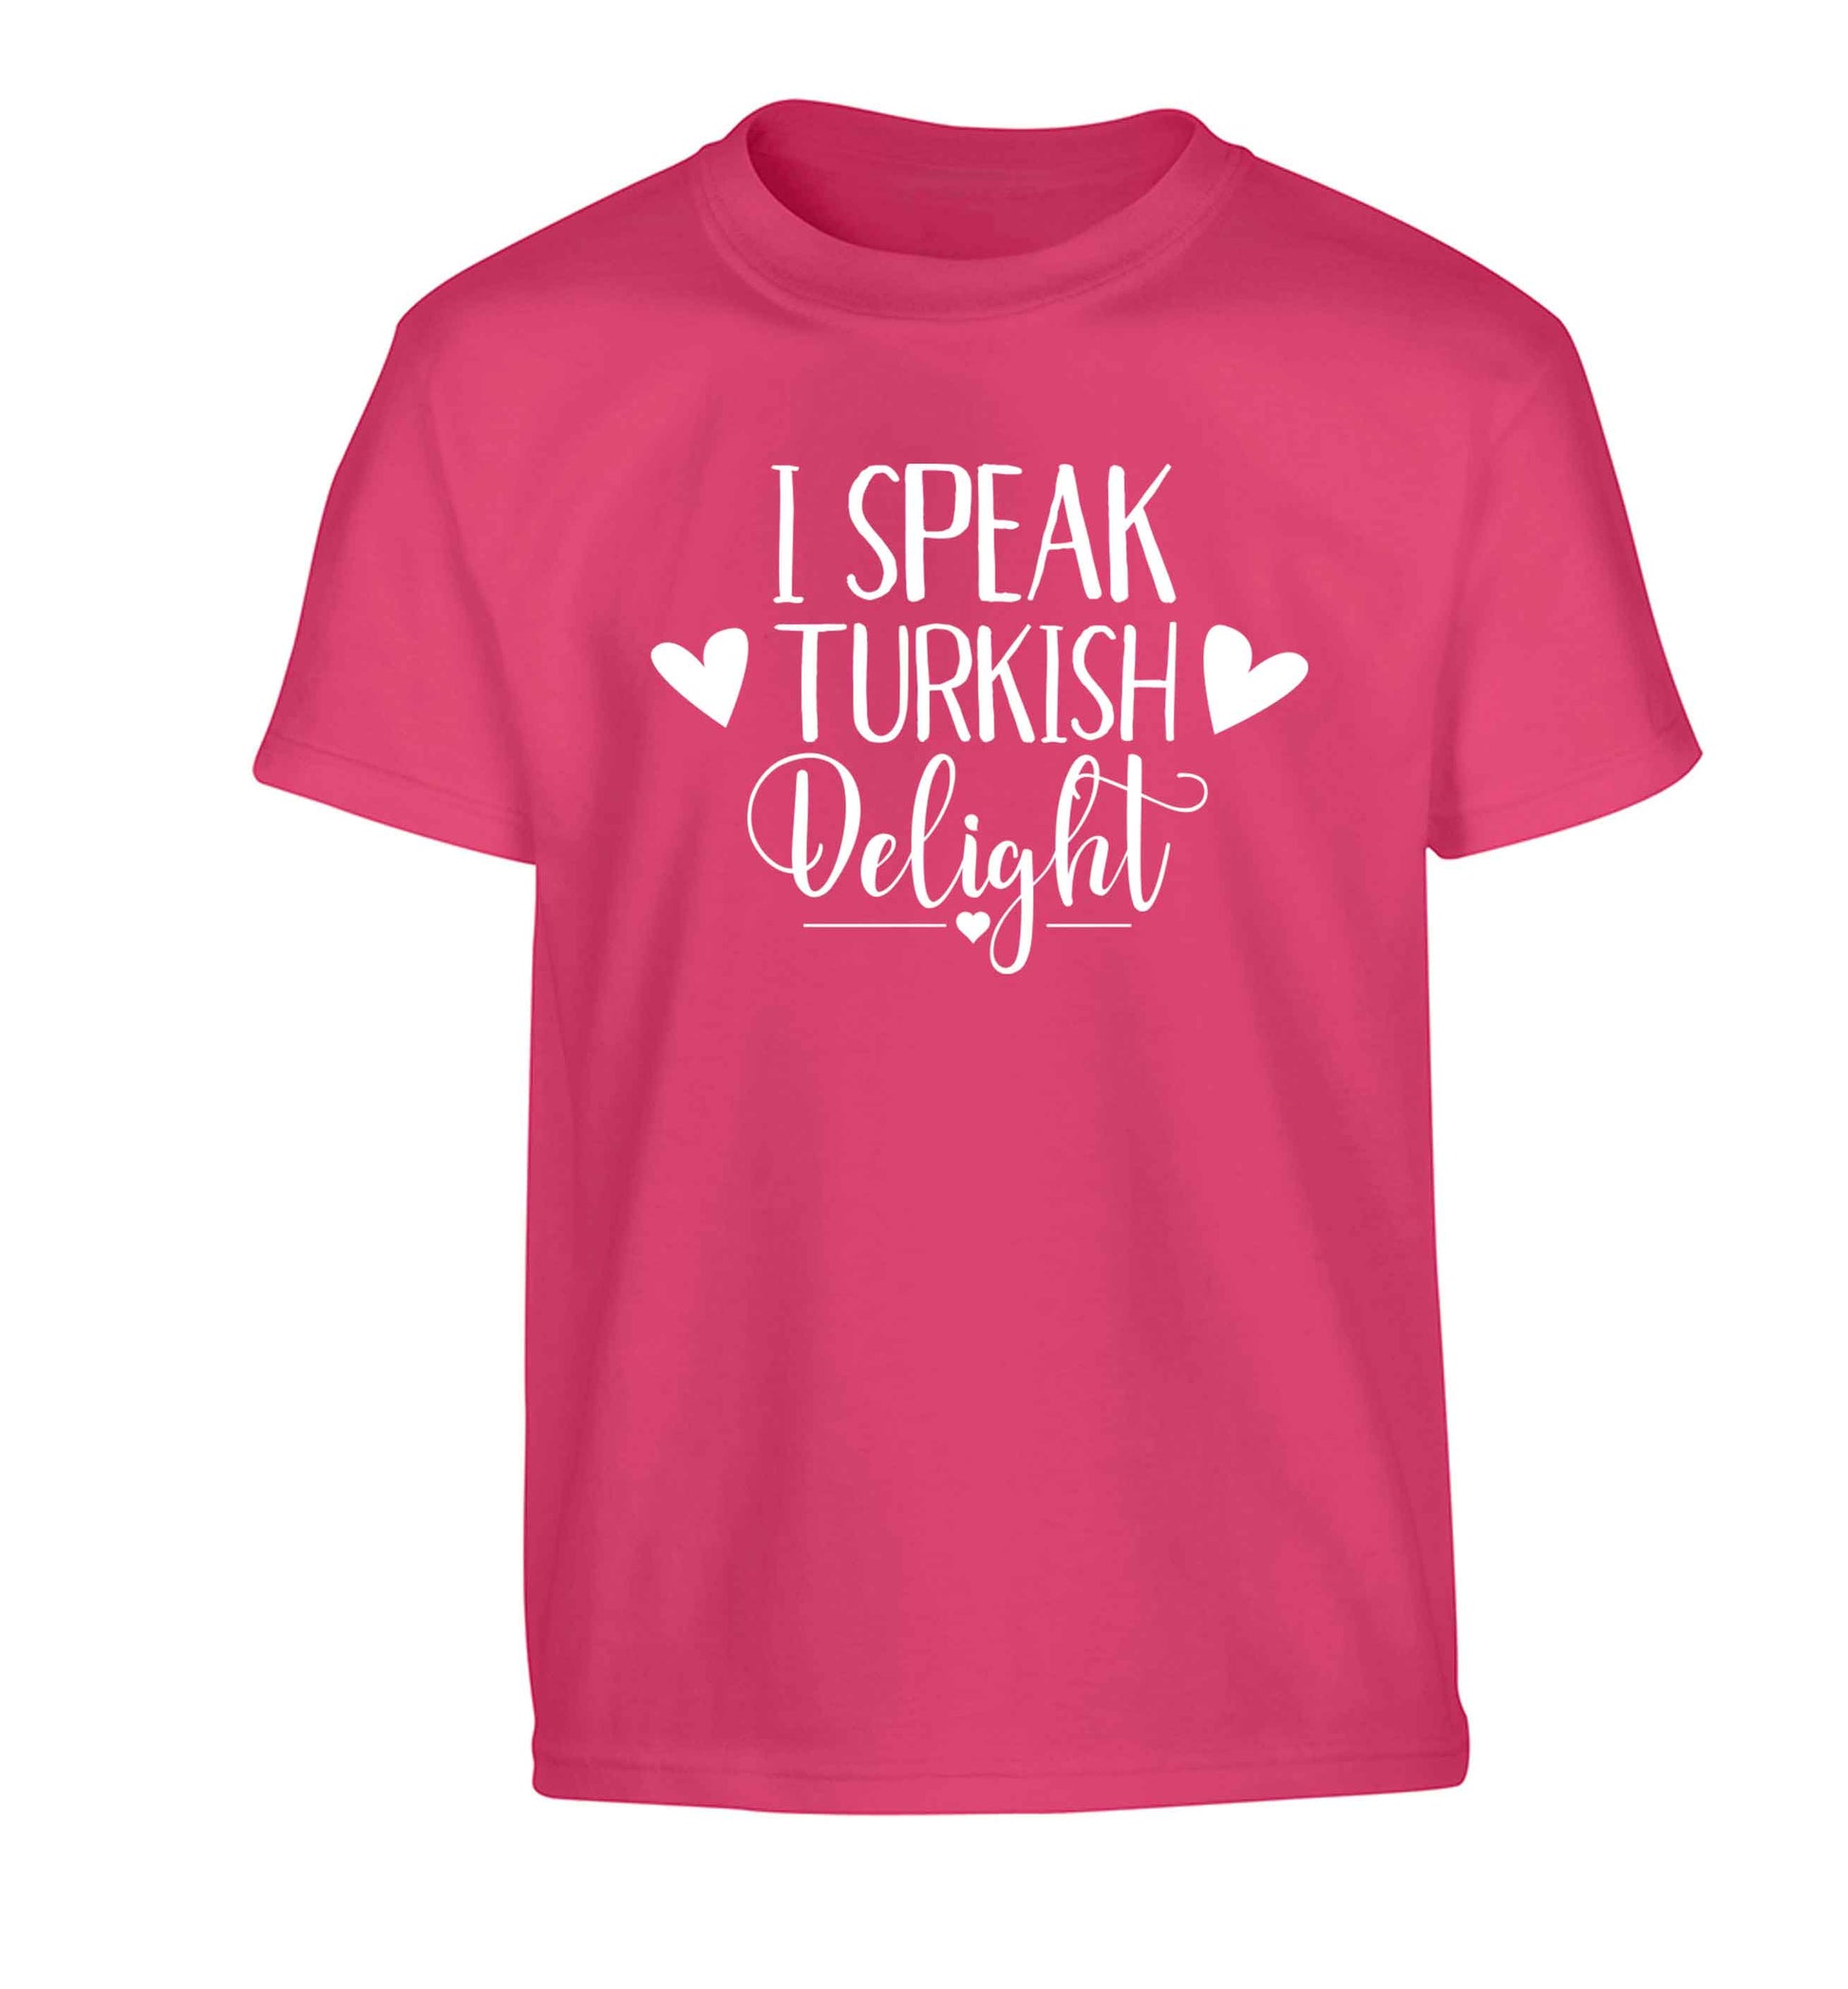 I speak turkish...delight Children's pink Tshirt 12-13 Years